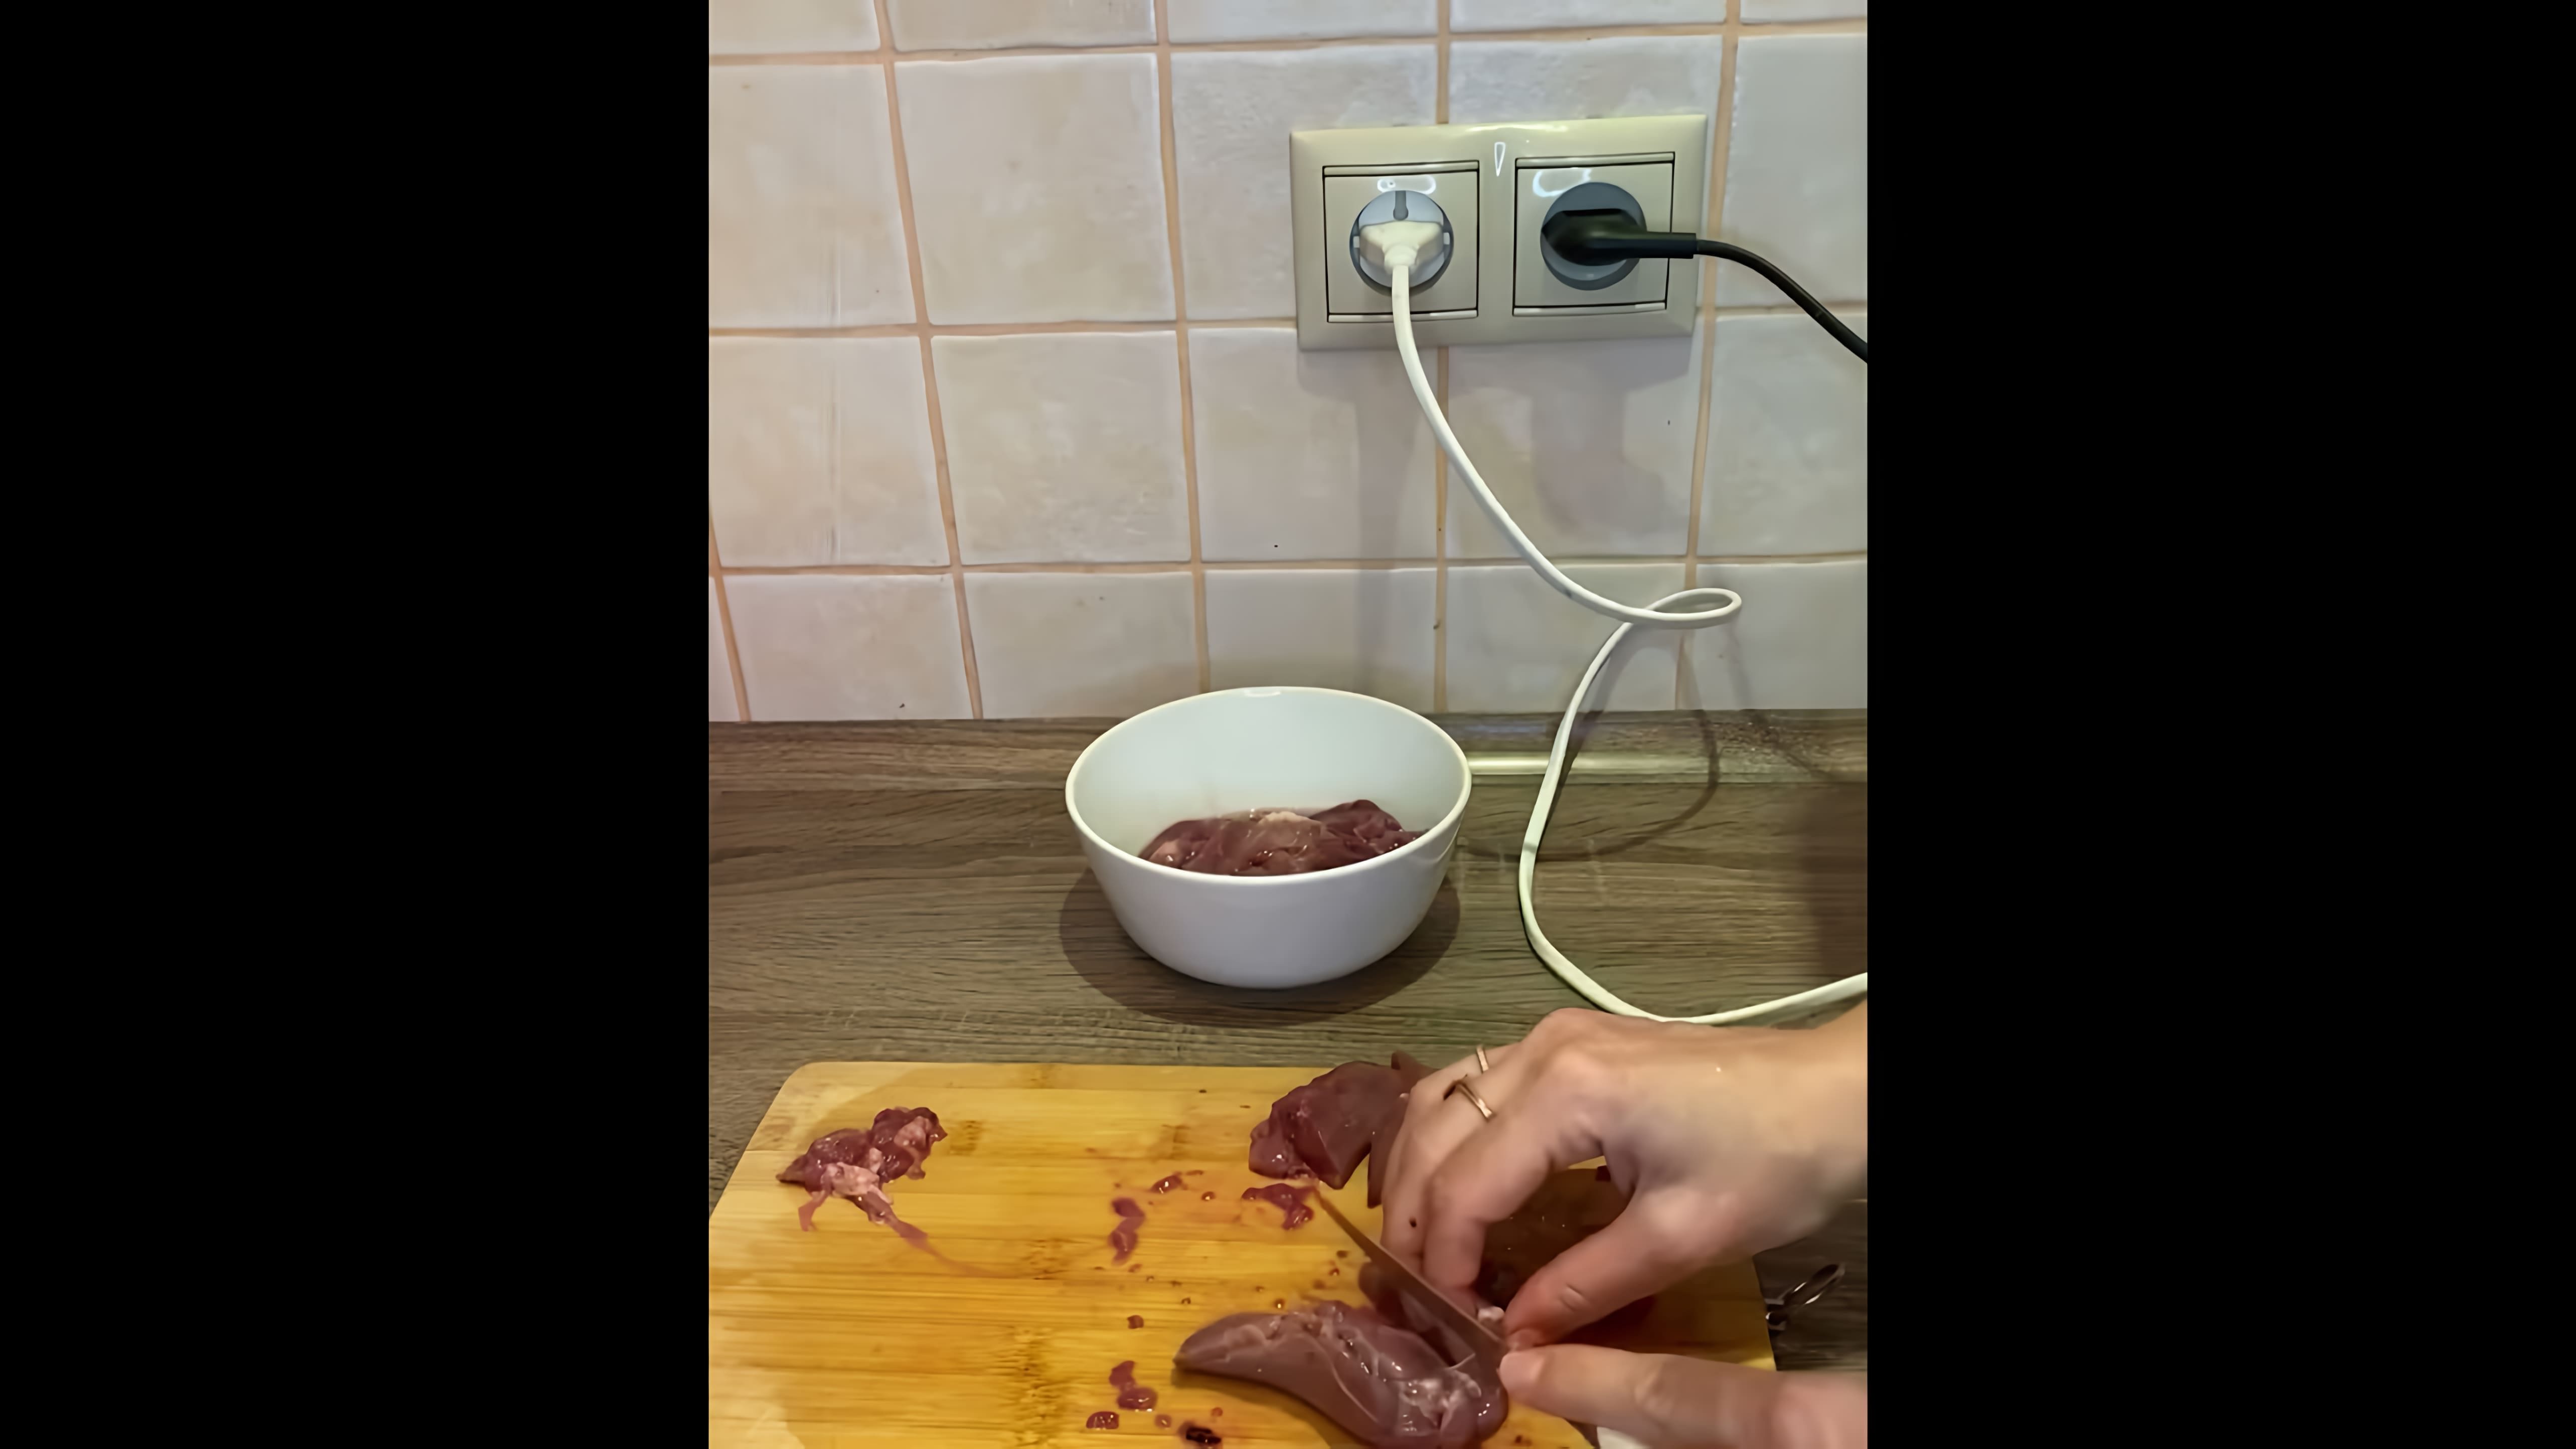 В этом видео демонстрируется рецепт приготовления суфле из куриной печени для детей